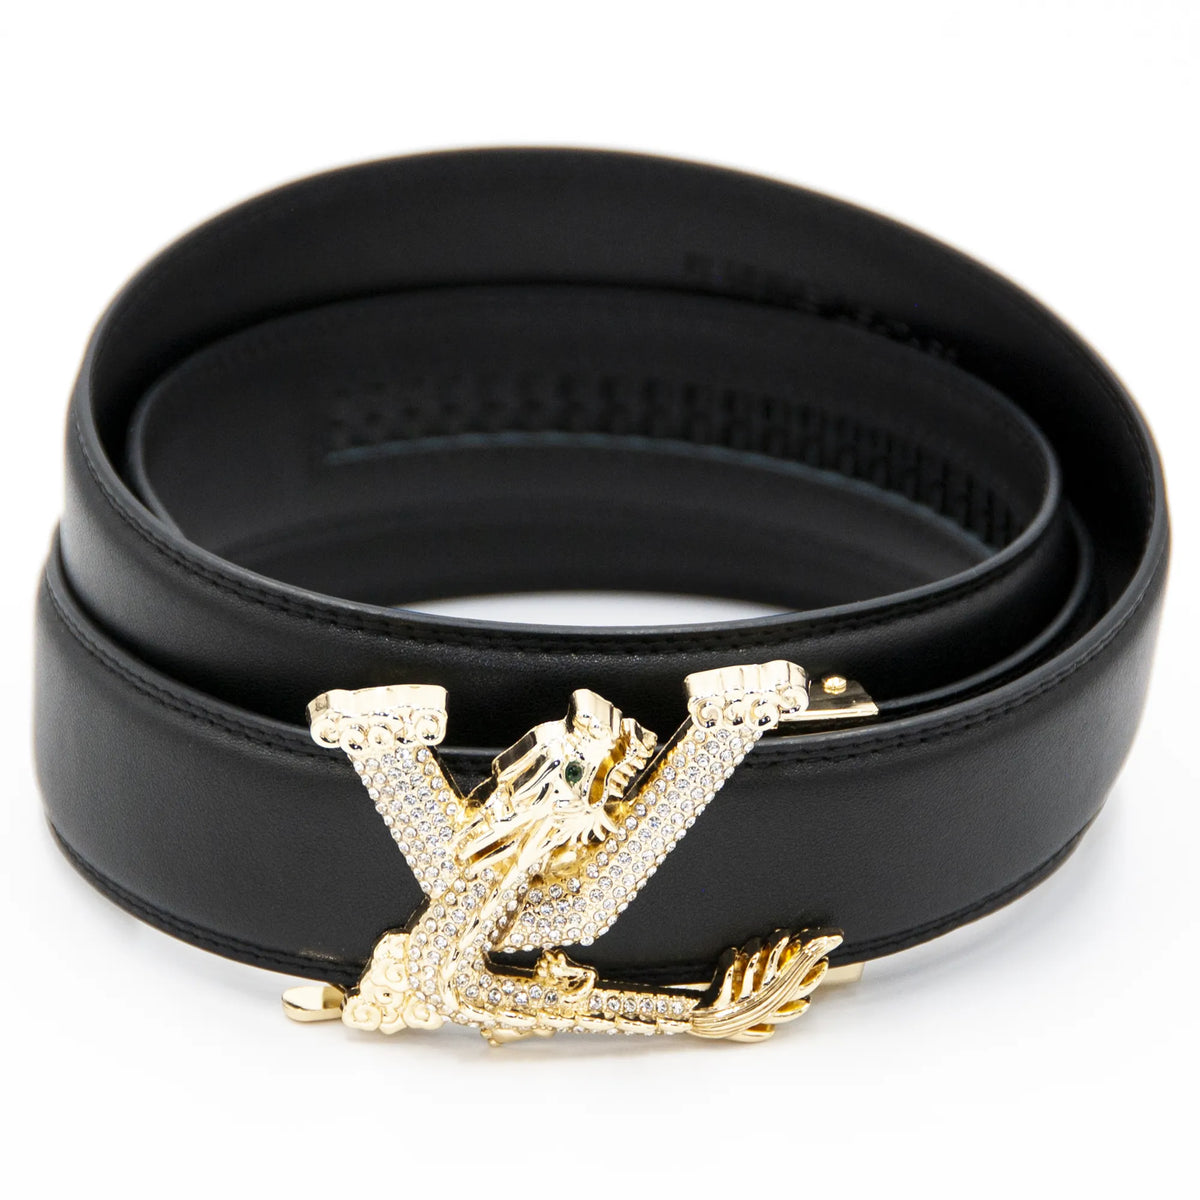 Gold Dragon G Belt Buckle  Belt buckles, Belt, Designer belt buckles